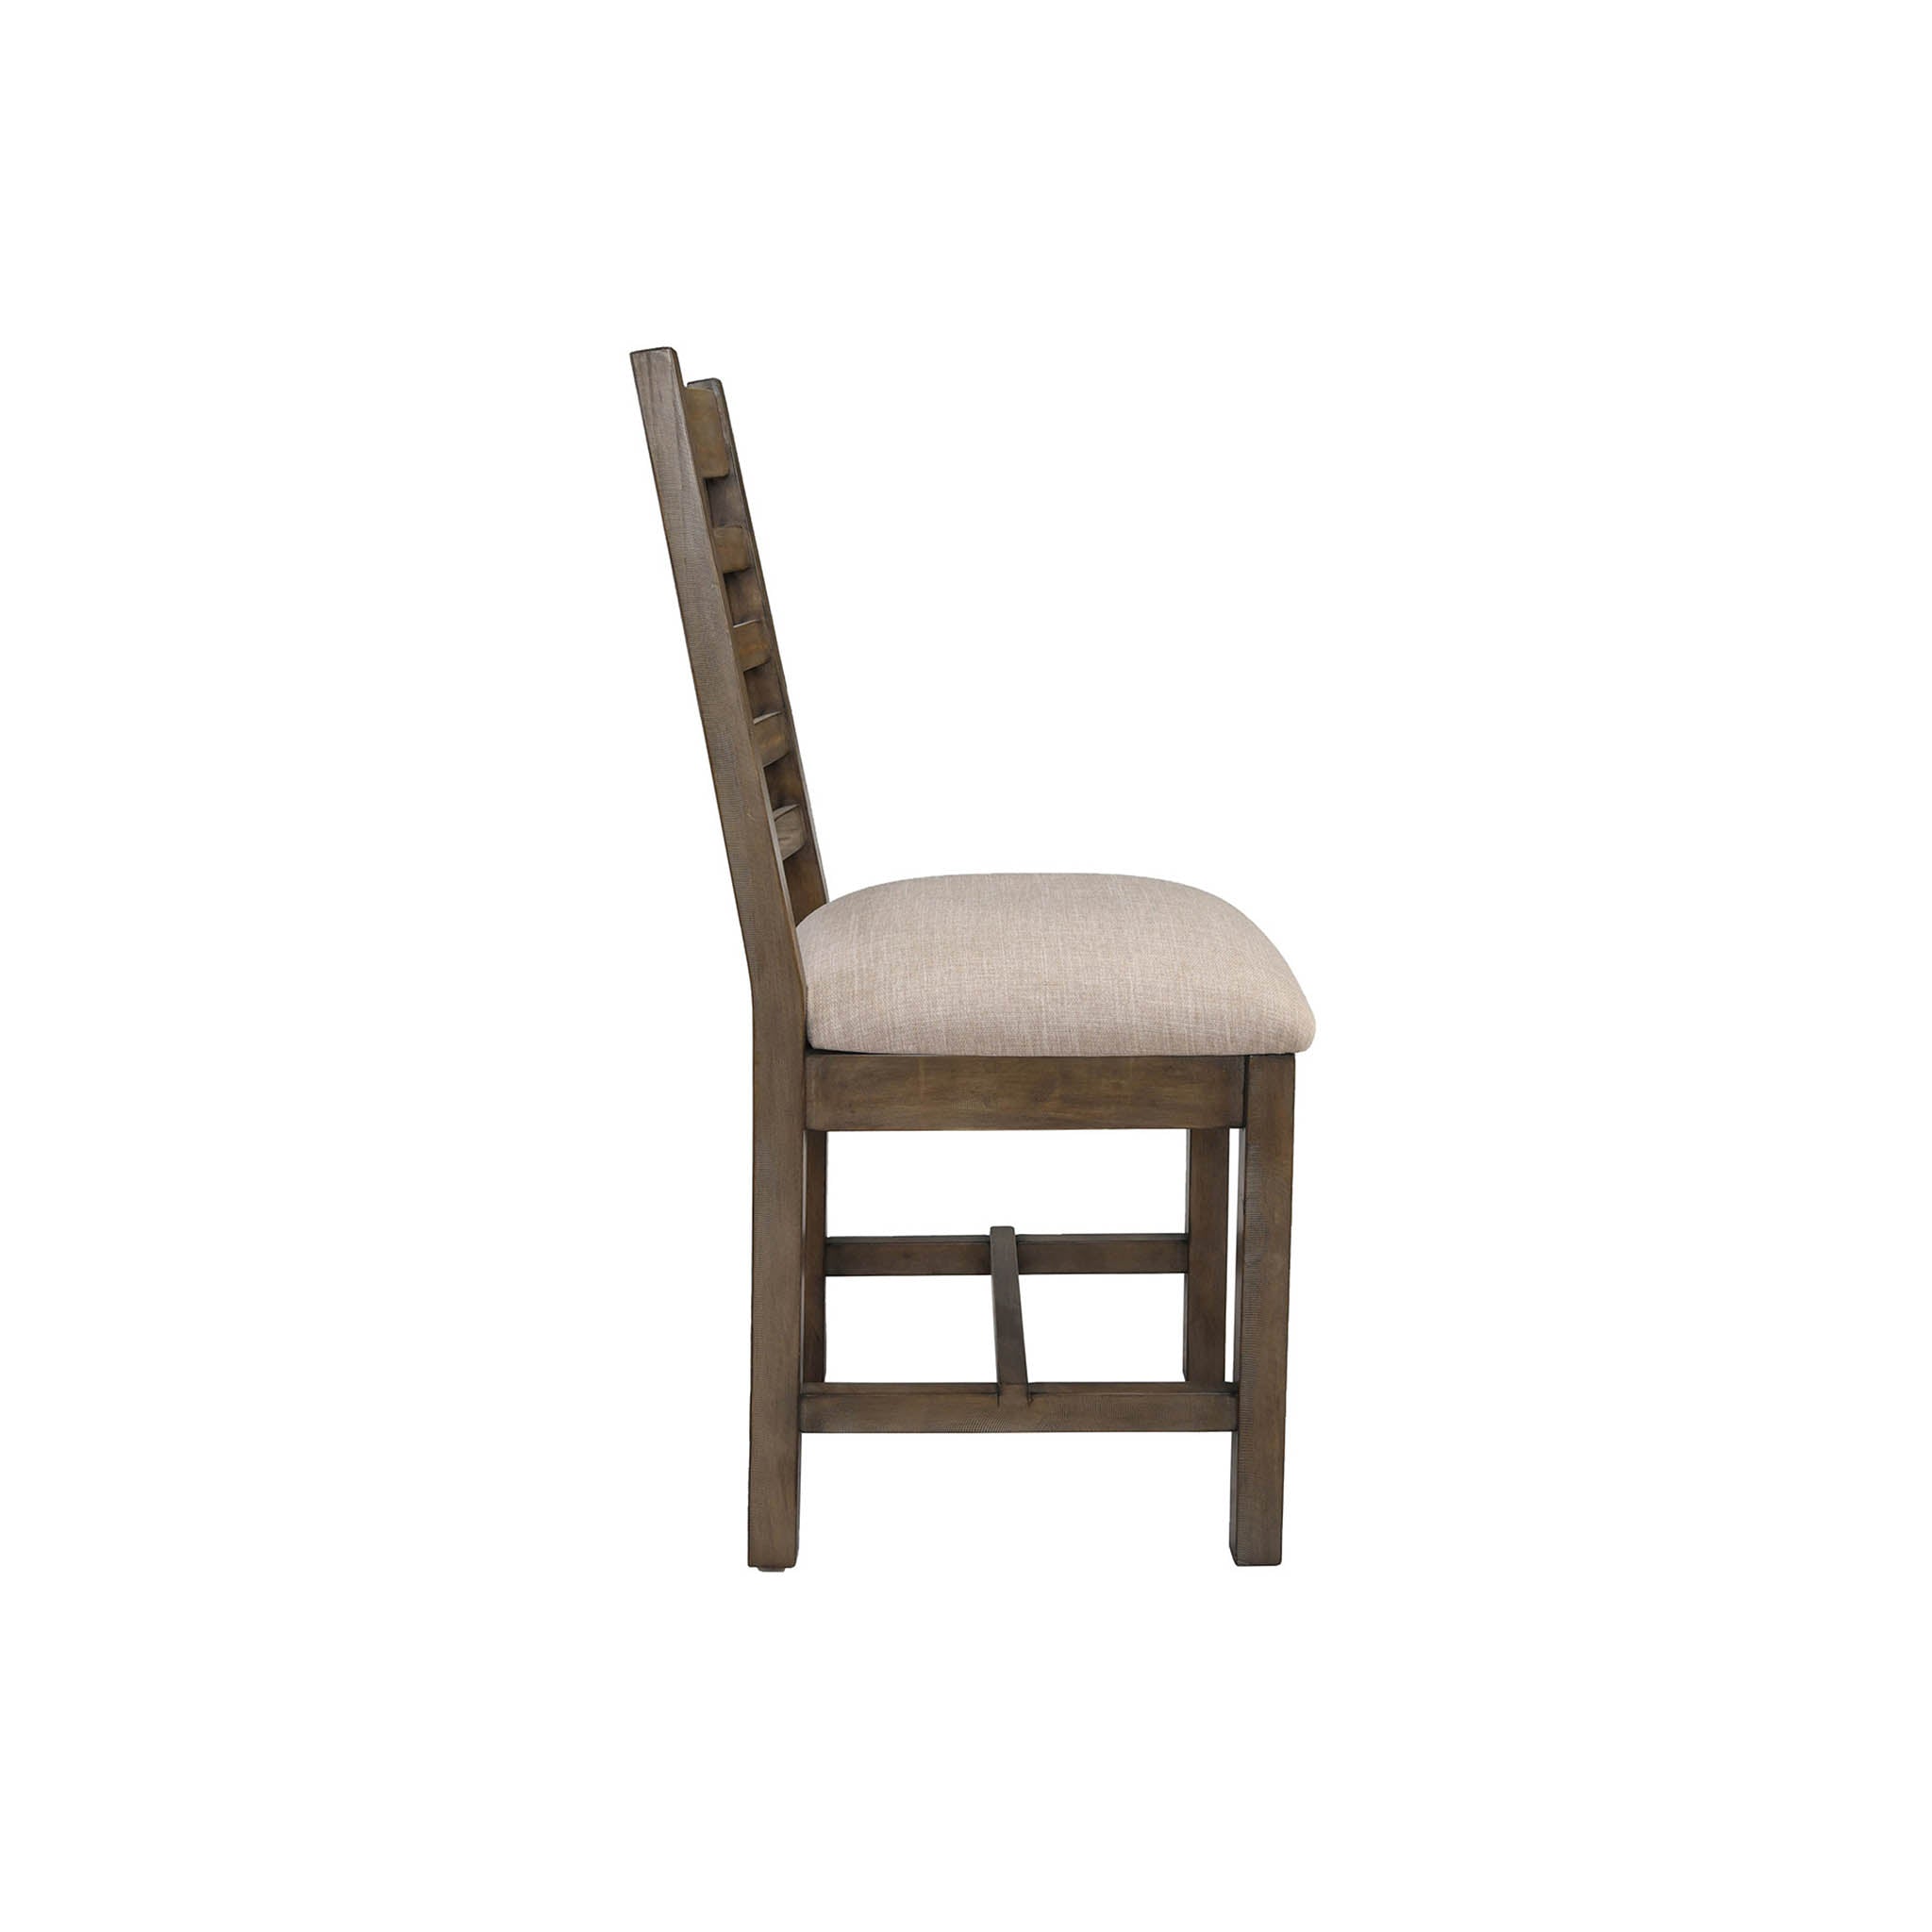 Bedford Upholstered Dining Chair, Desert Grey